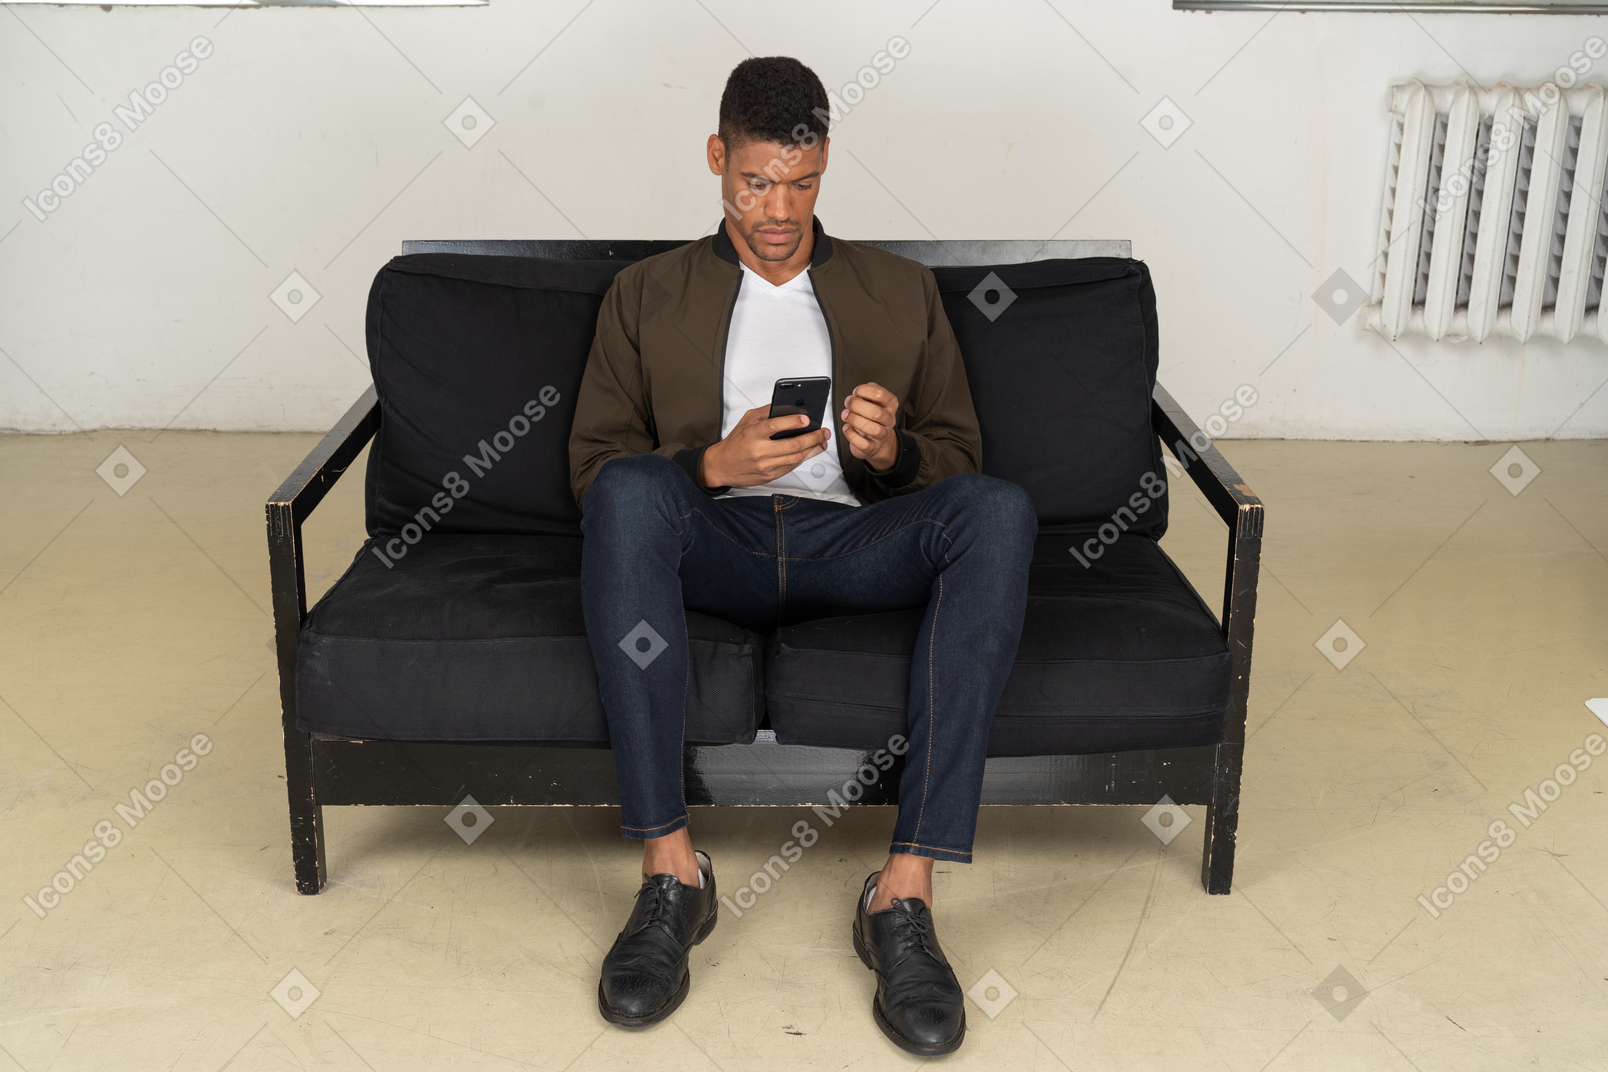 Vorderansicht eines jungen mannes, der auf einem sofa sitzt und auf sein handy schaut